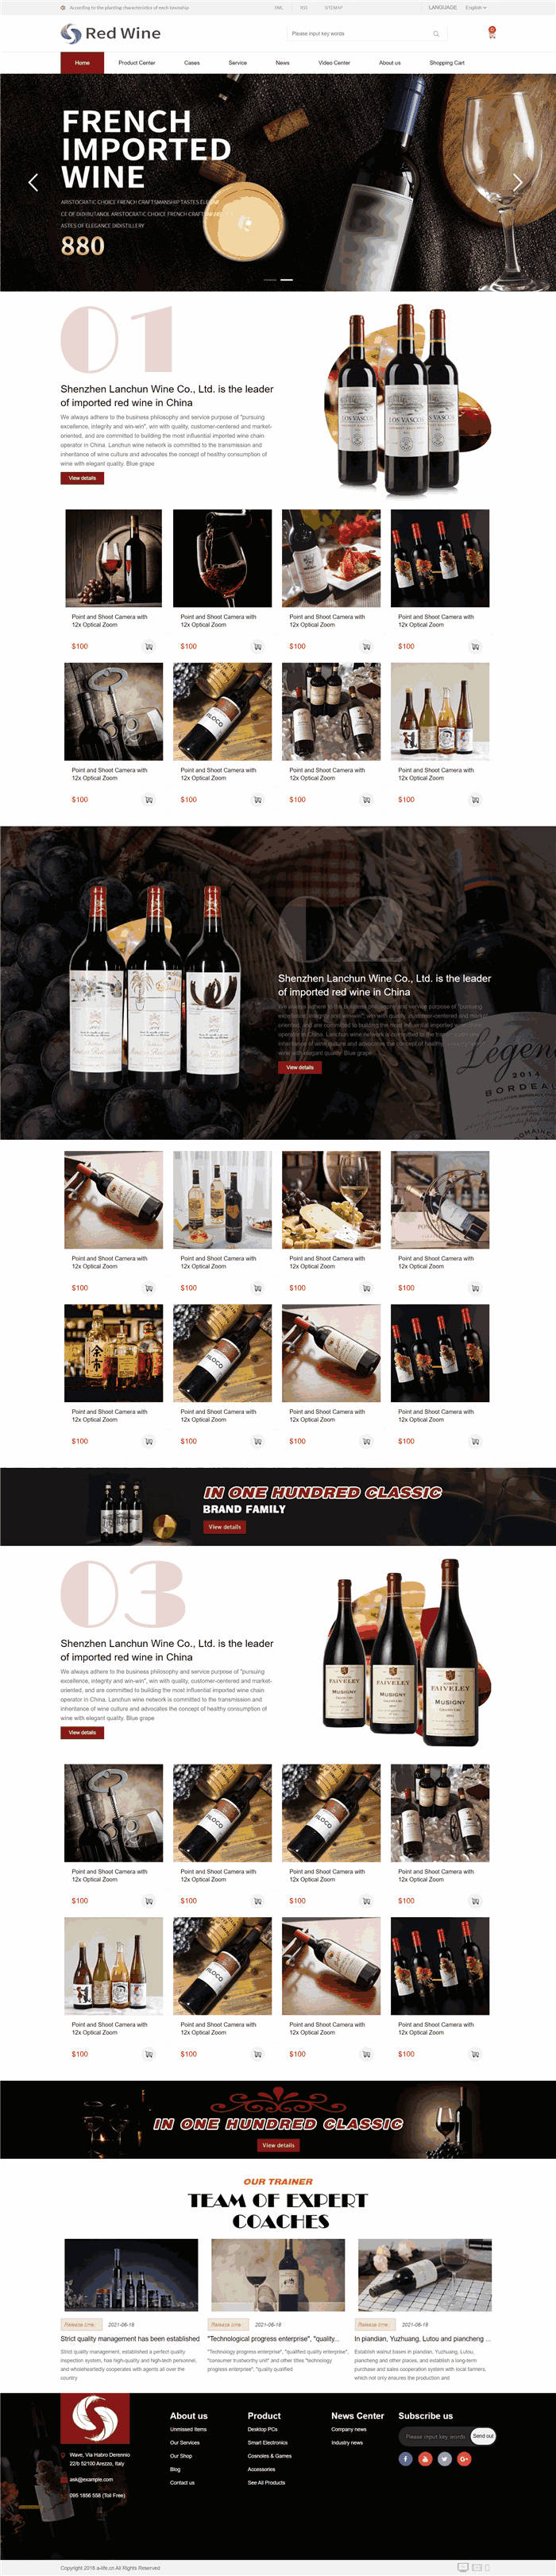 高端进口红酒葡萄酒外贸英文WordPress网站模板效果图